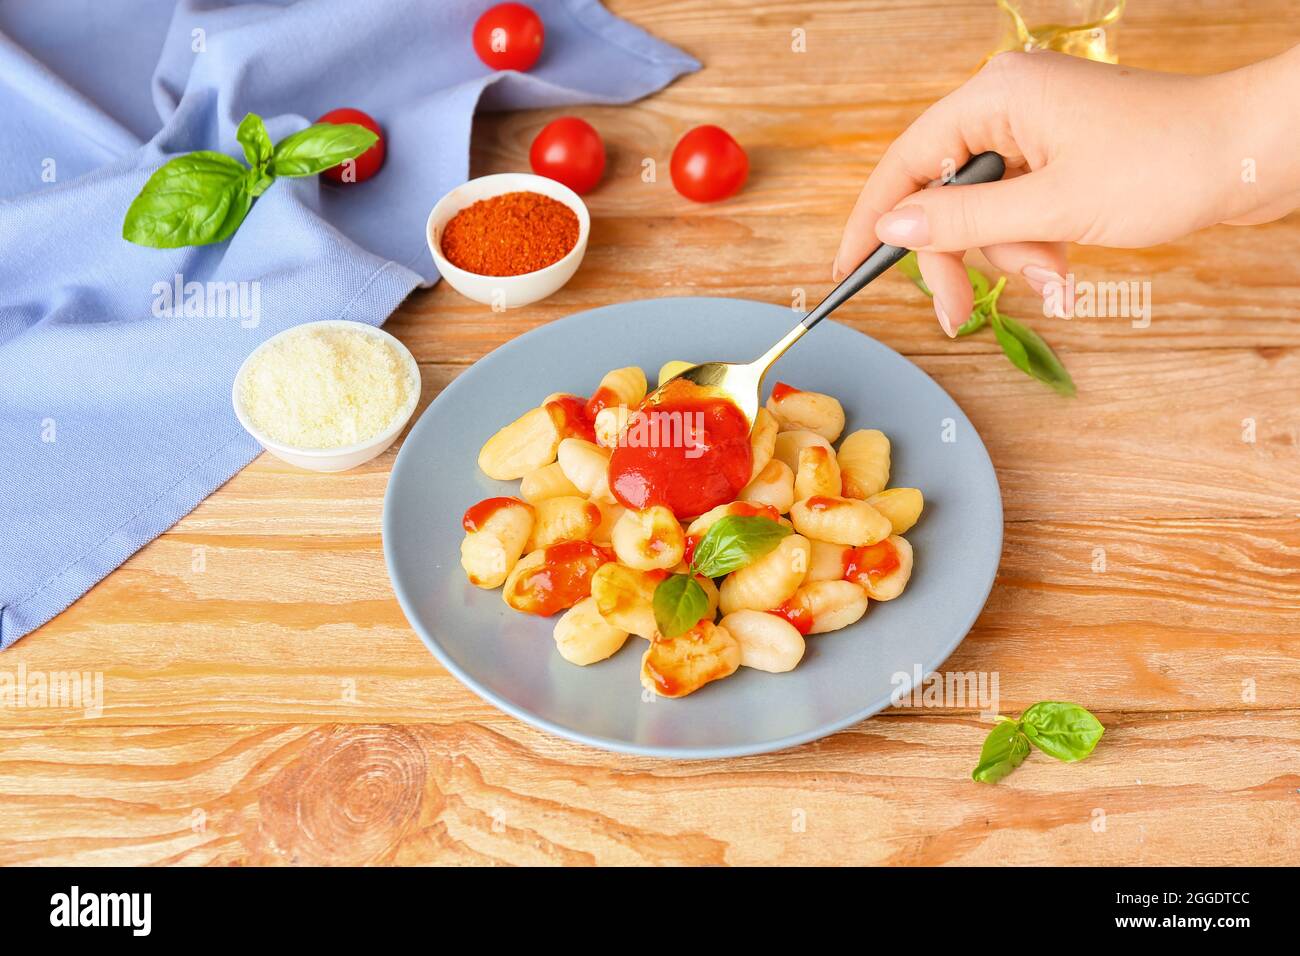 Frau, die Tomatensauce auf den Teller mit leckeren Gnocchi auf dem Holztisch zugegeben hat Stockfoto